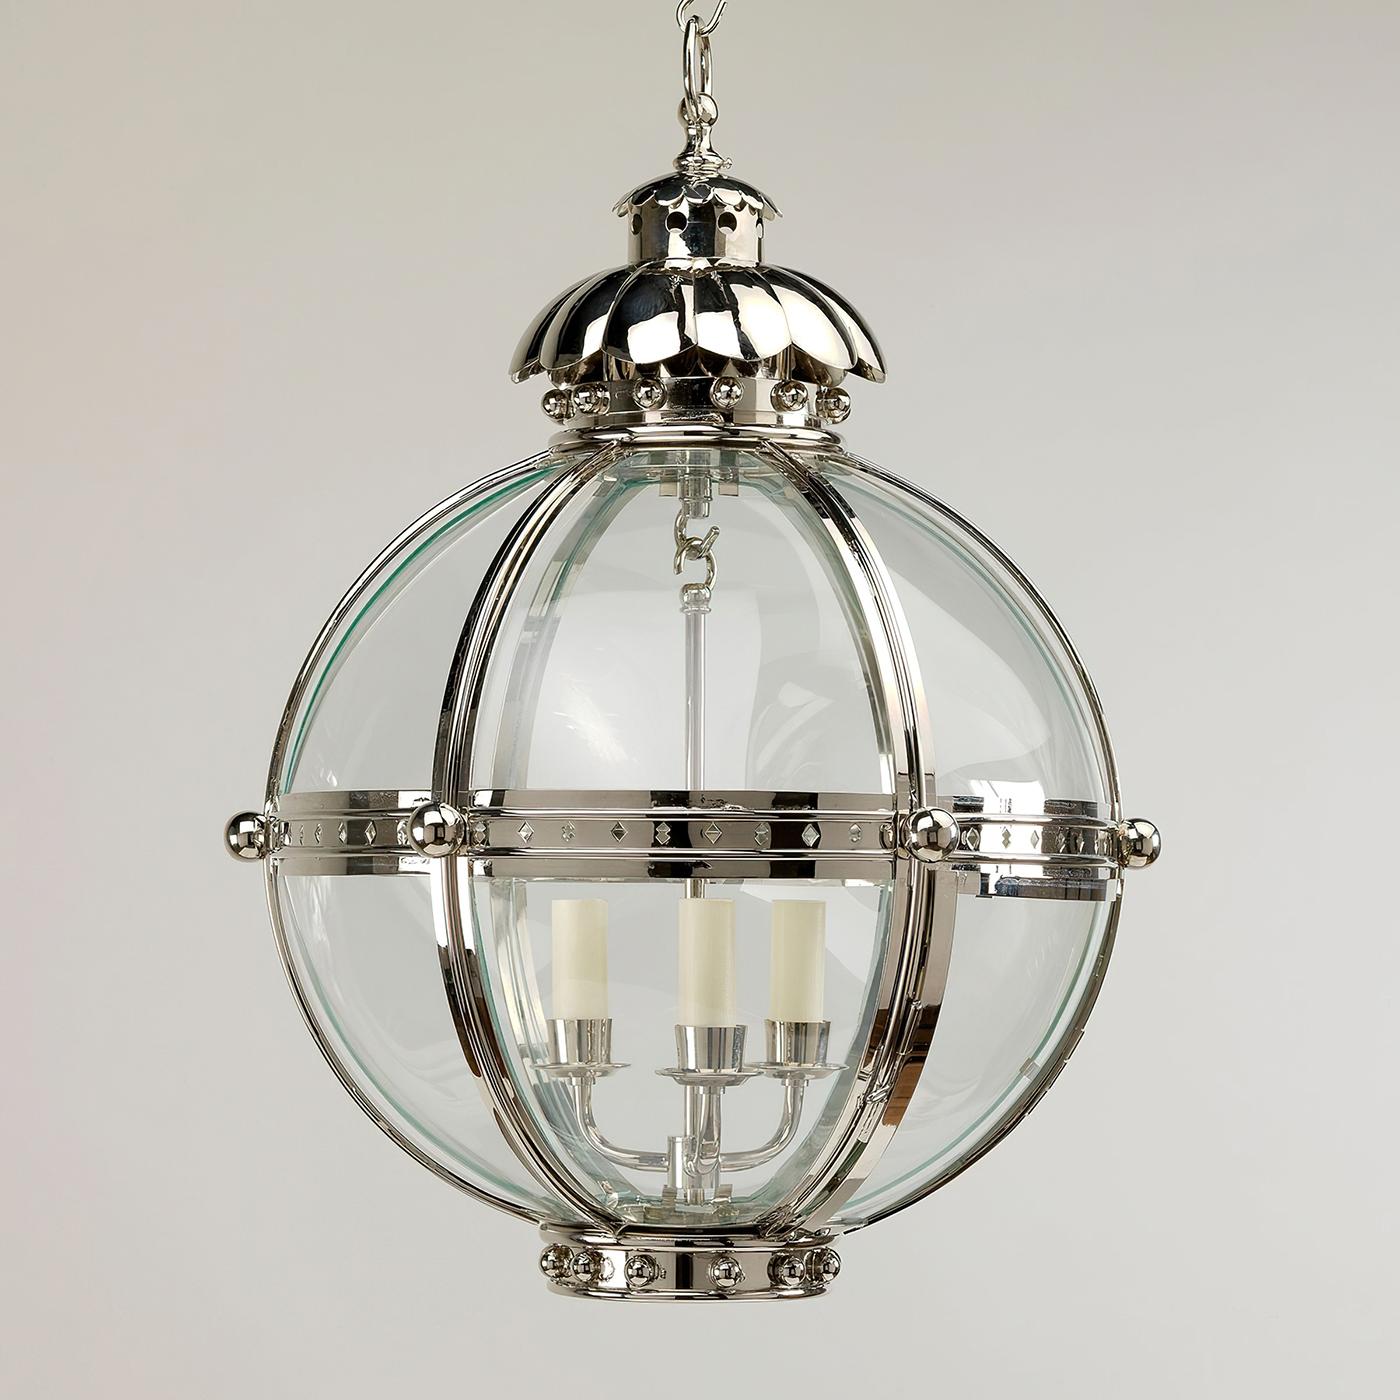 La lanterne Globe est inspirée d'une antiquité similaire du XIXe siècle. La forme de globe du luminaire dégage de la force et est unie par les fleurons en finition nickel et le sommet en forme d'acanthe.

La lanterne est fabriquée à la main à